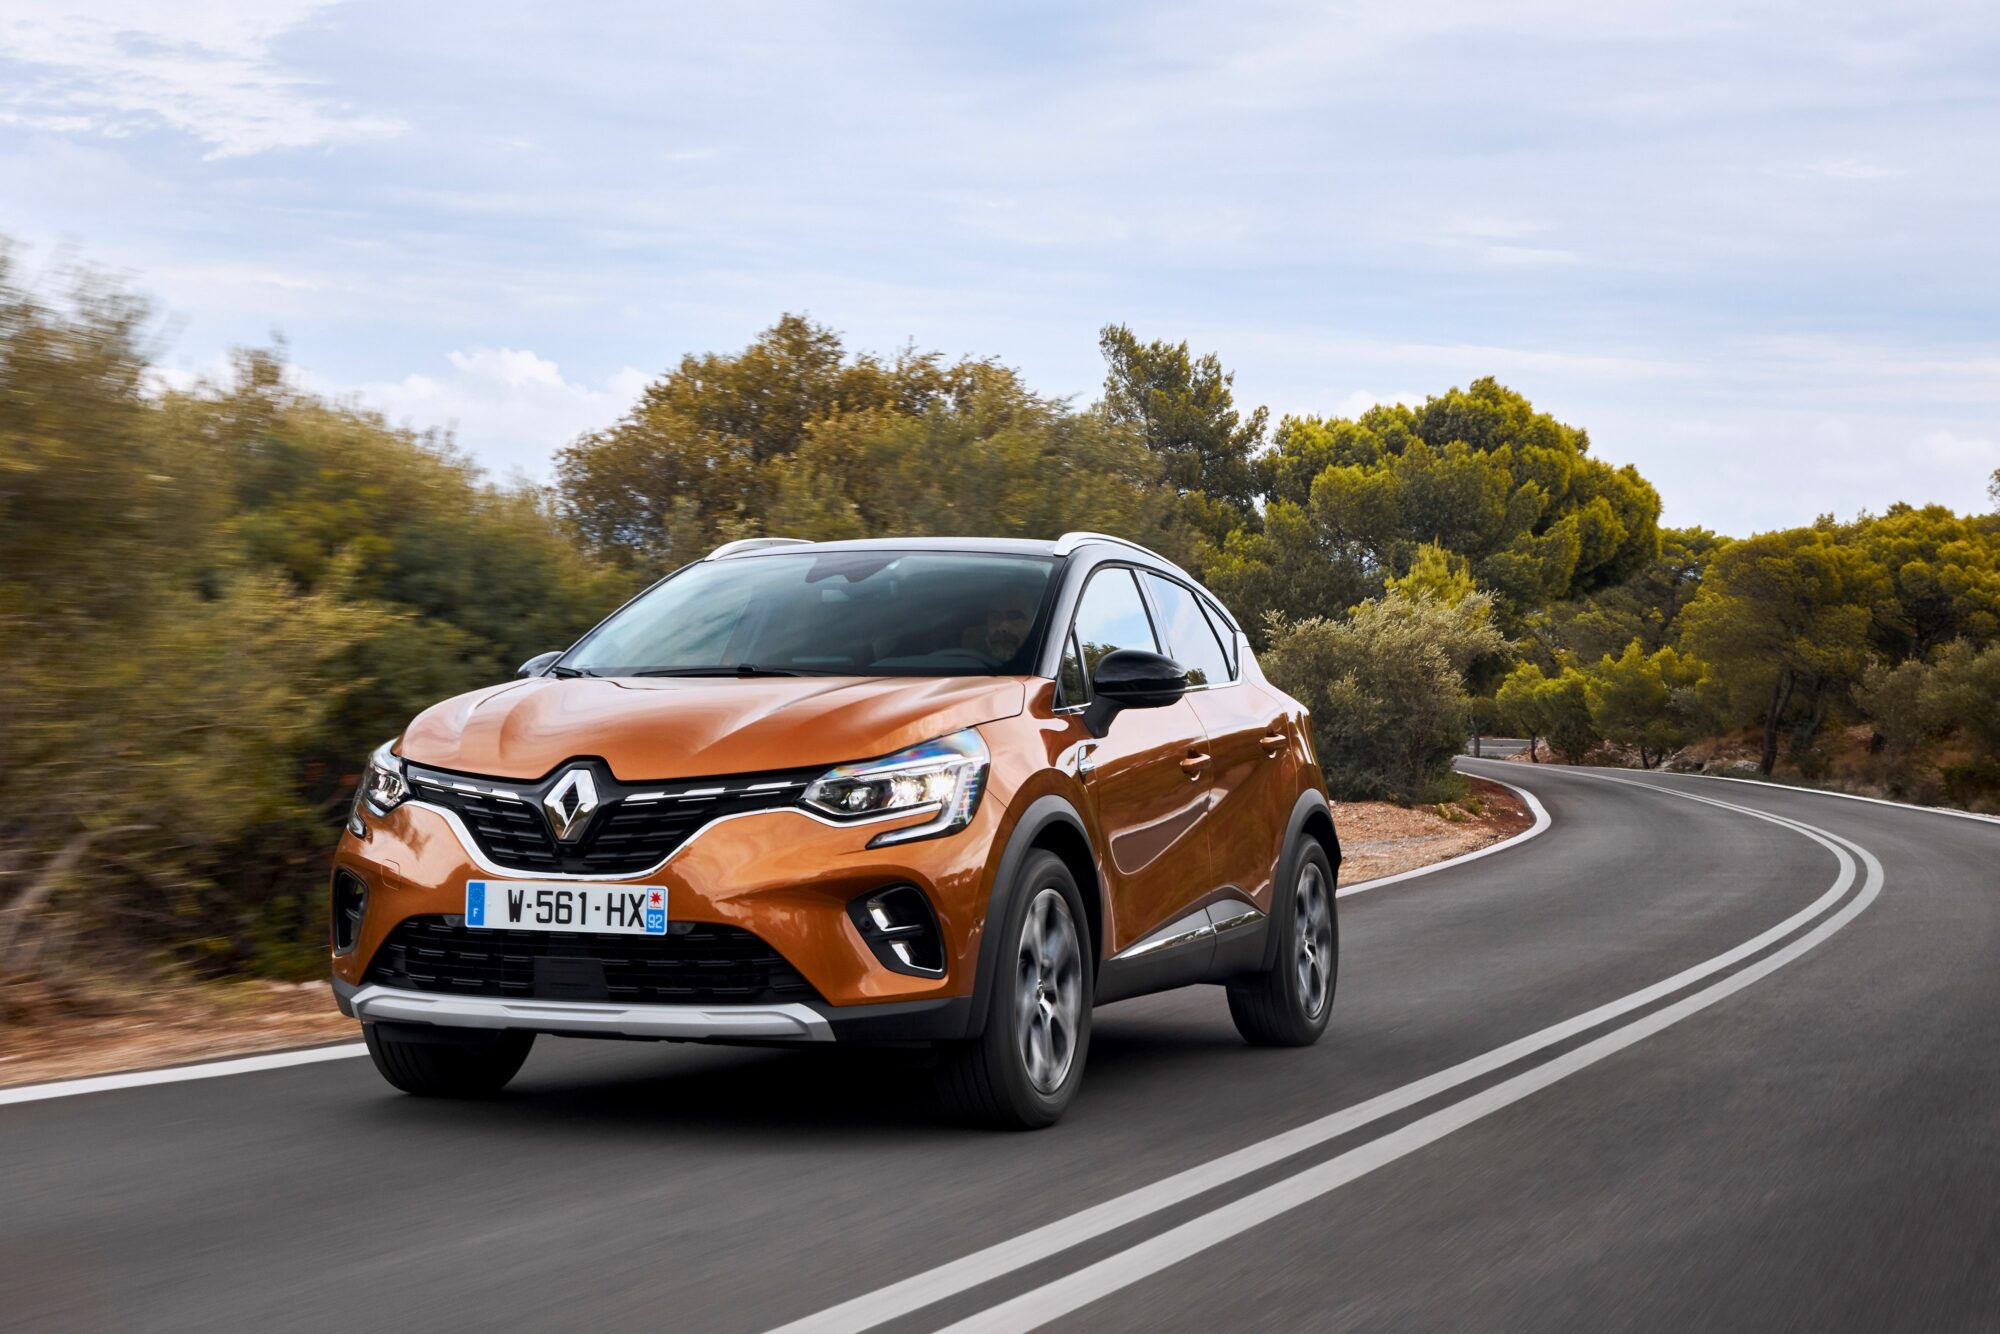 2019 - Essais presse Nouveau Renault CAPTUR en Grèce